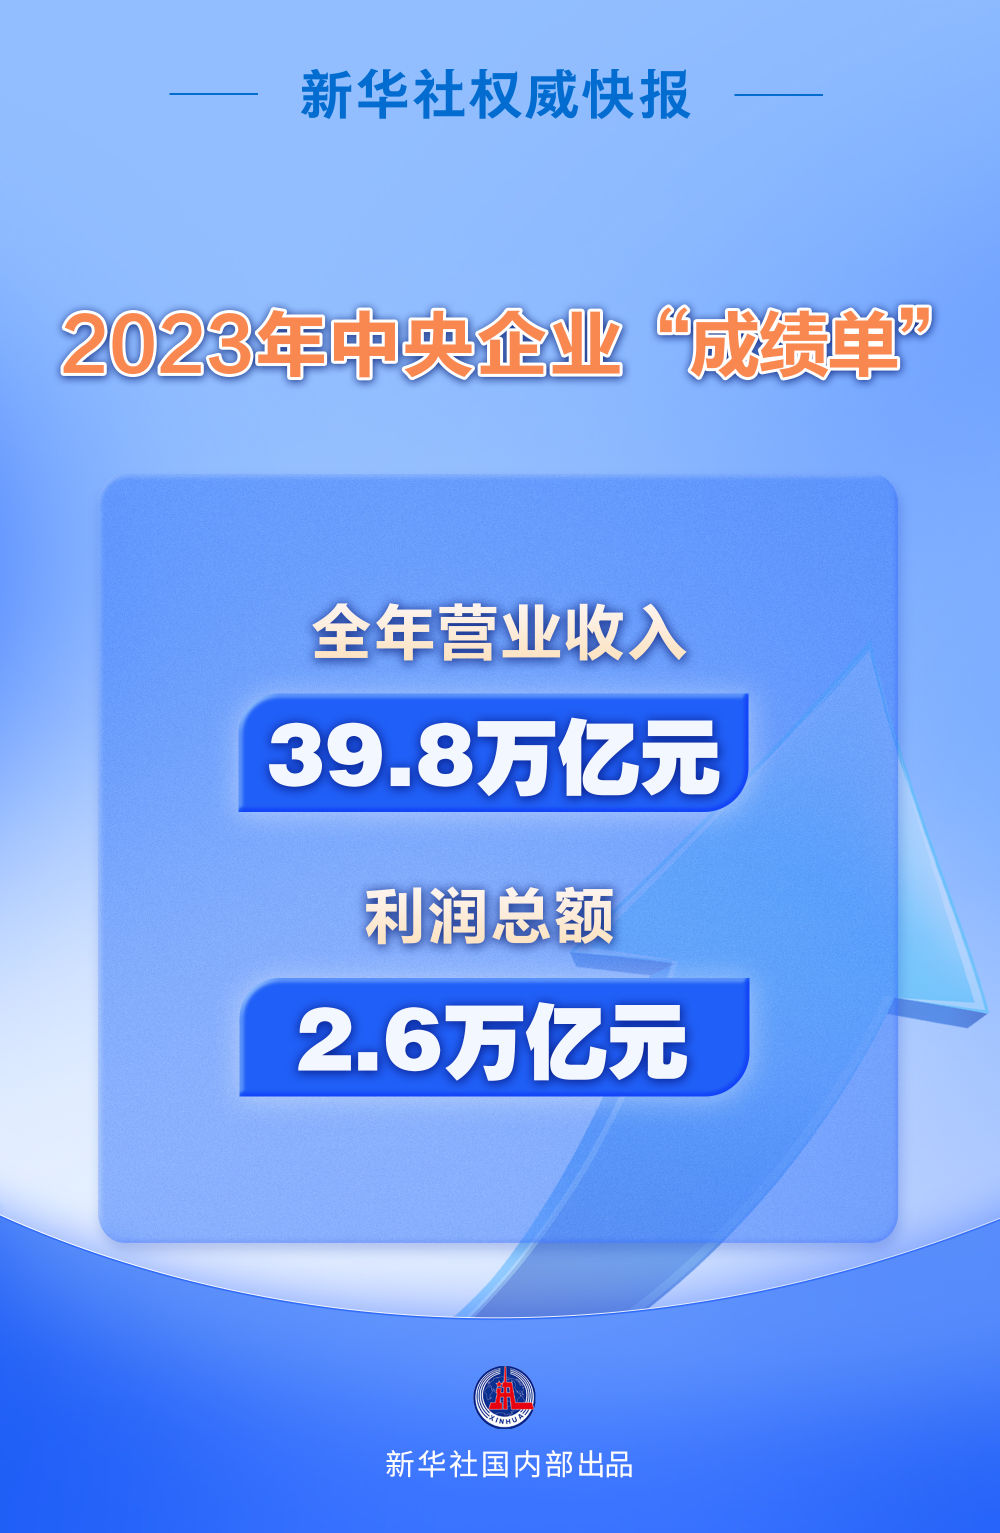 新华社权威快报丨2023年央企实现营收39.8万亿元